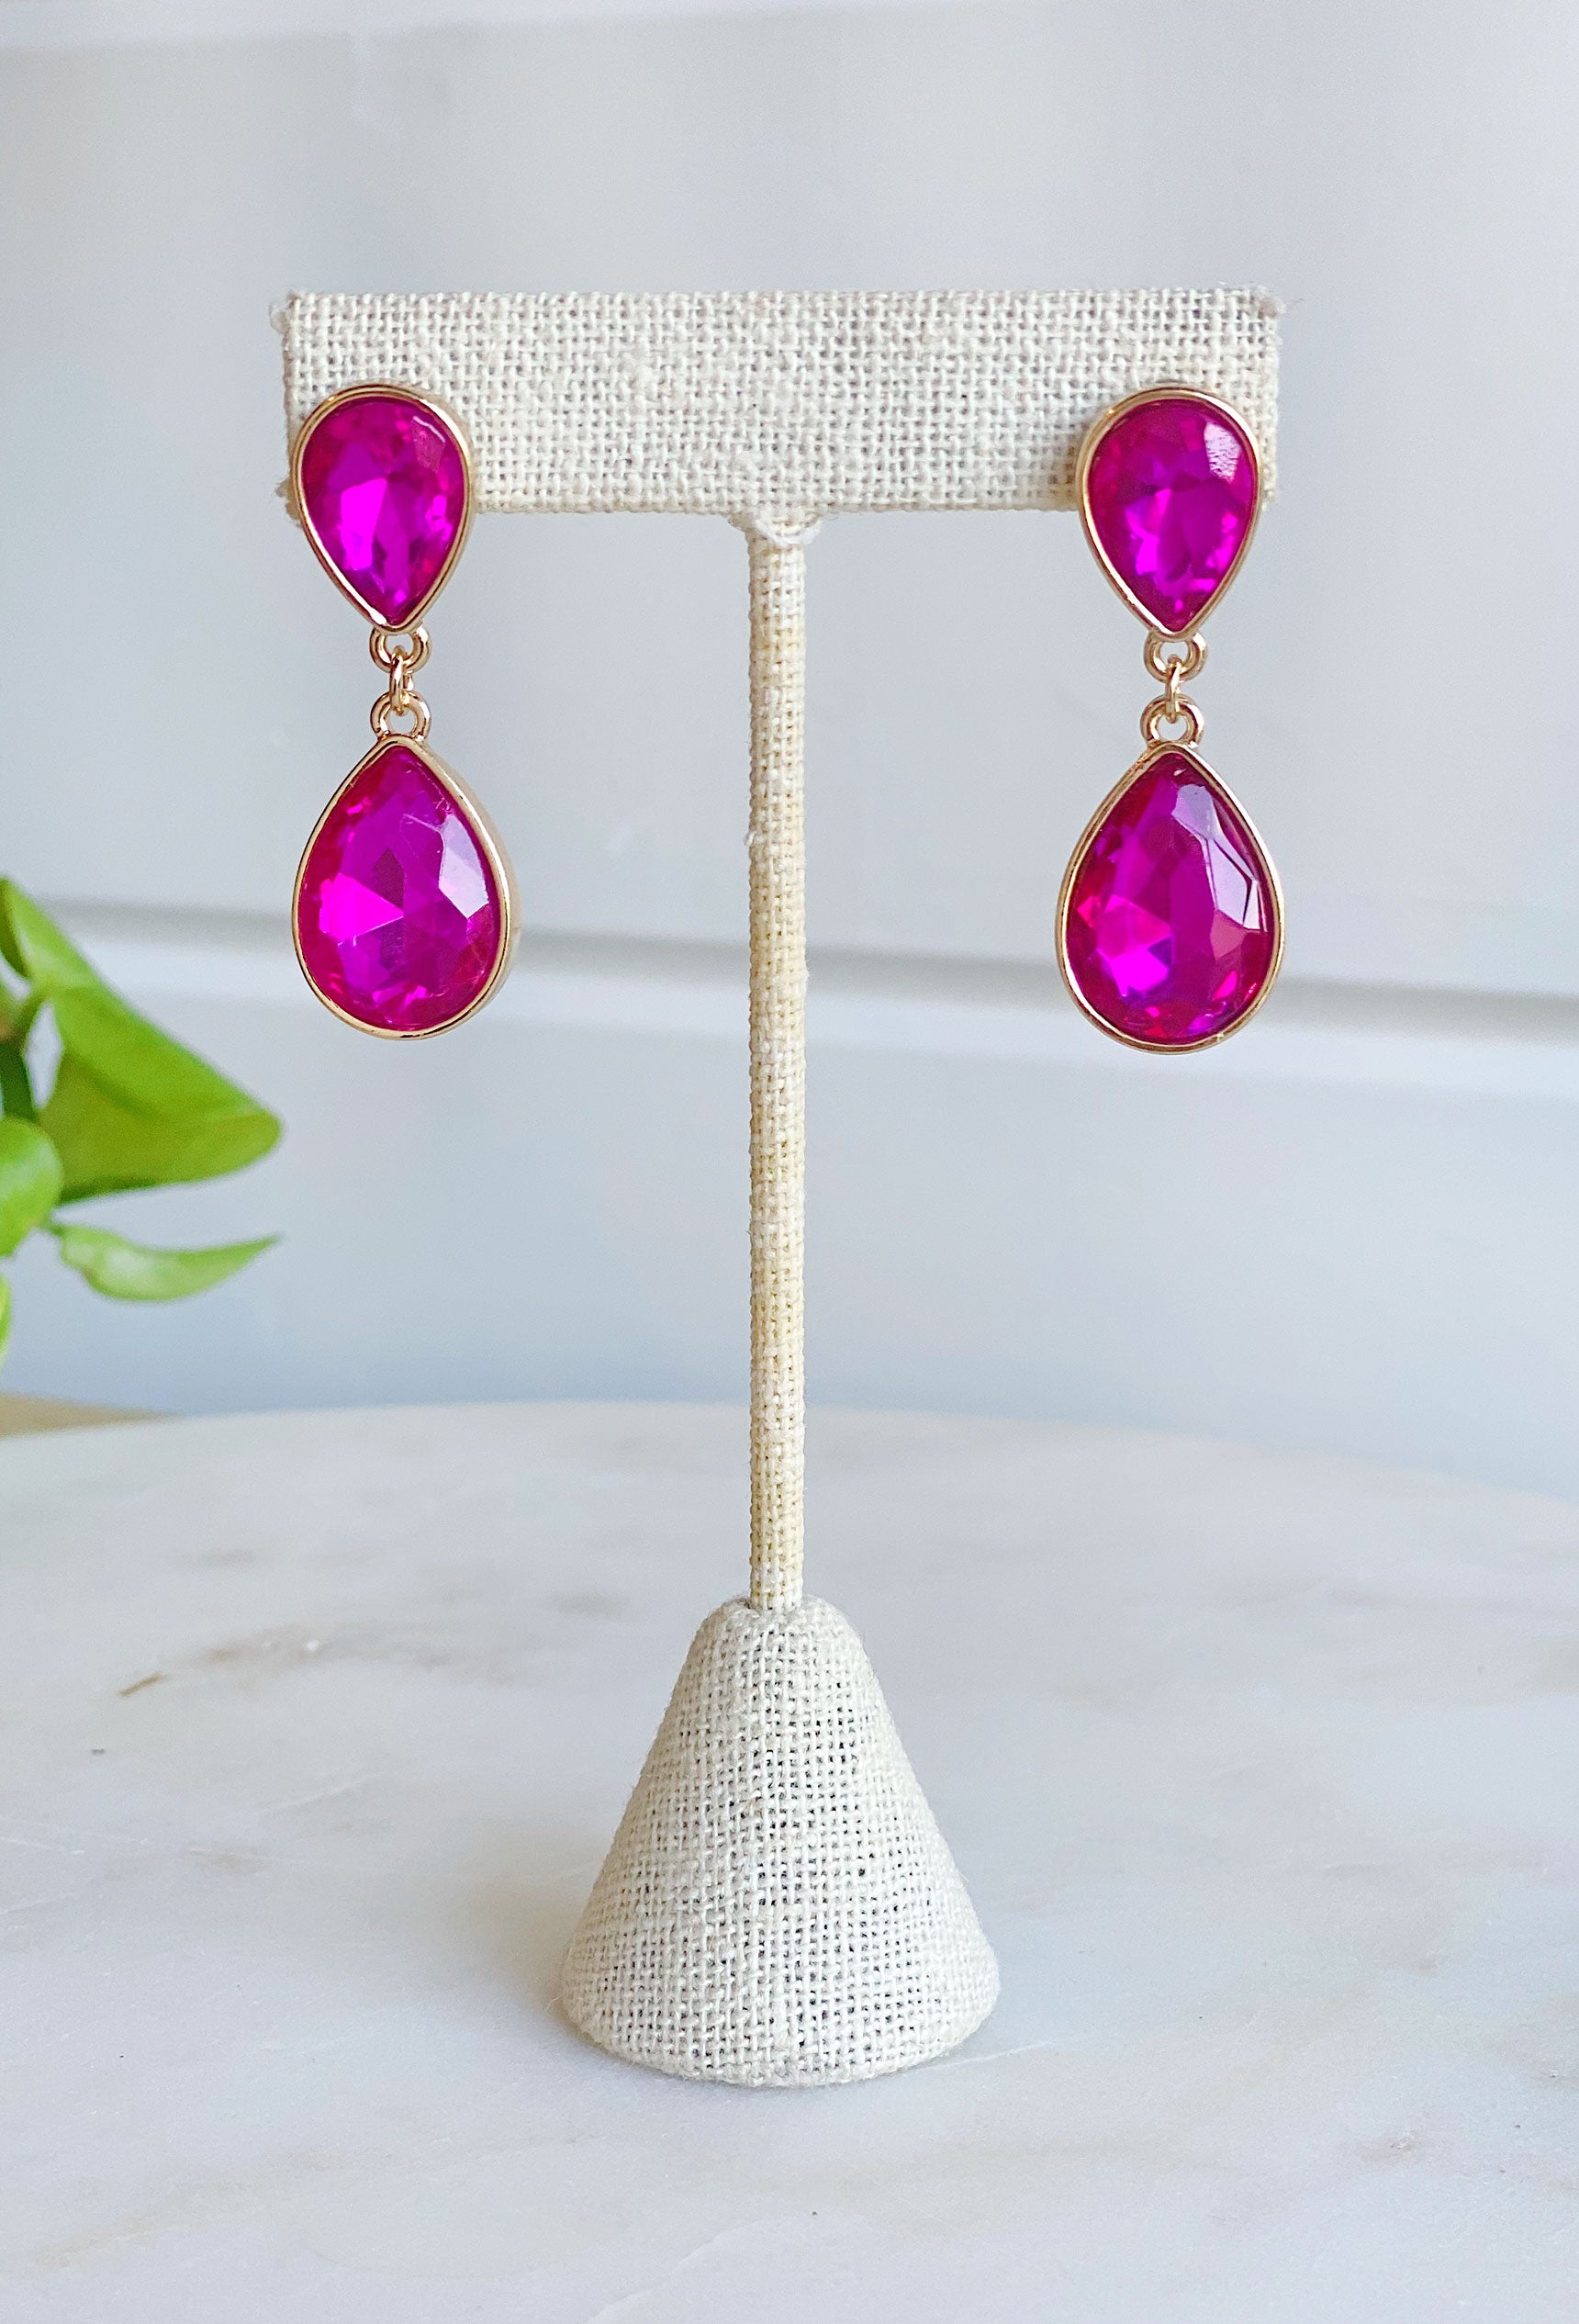 Leave A Little Sparkle Earrings in Fuchsia, teardrop earrings, pink fuchsia earrings